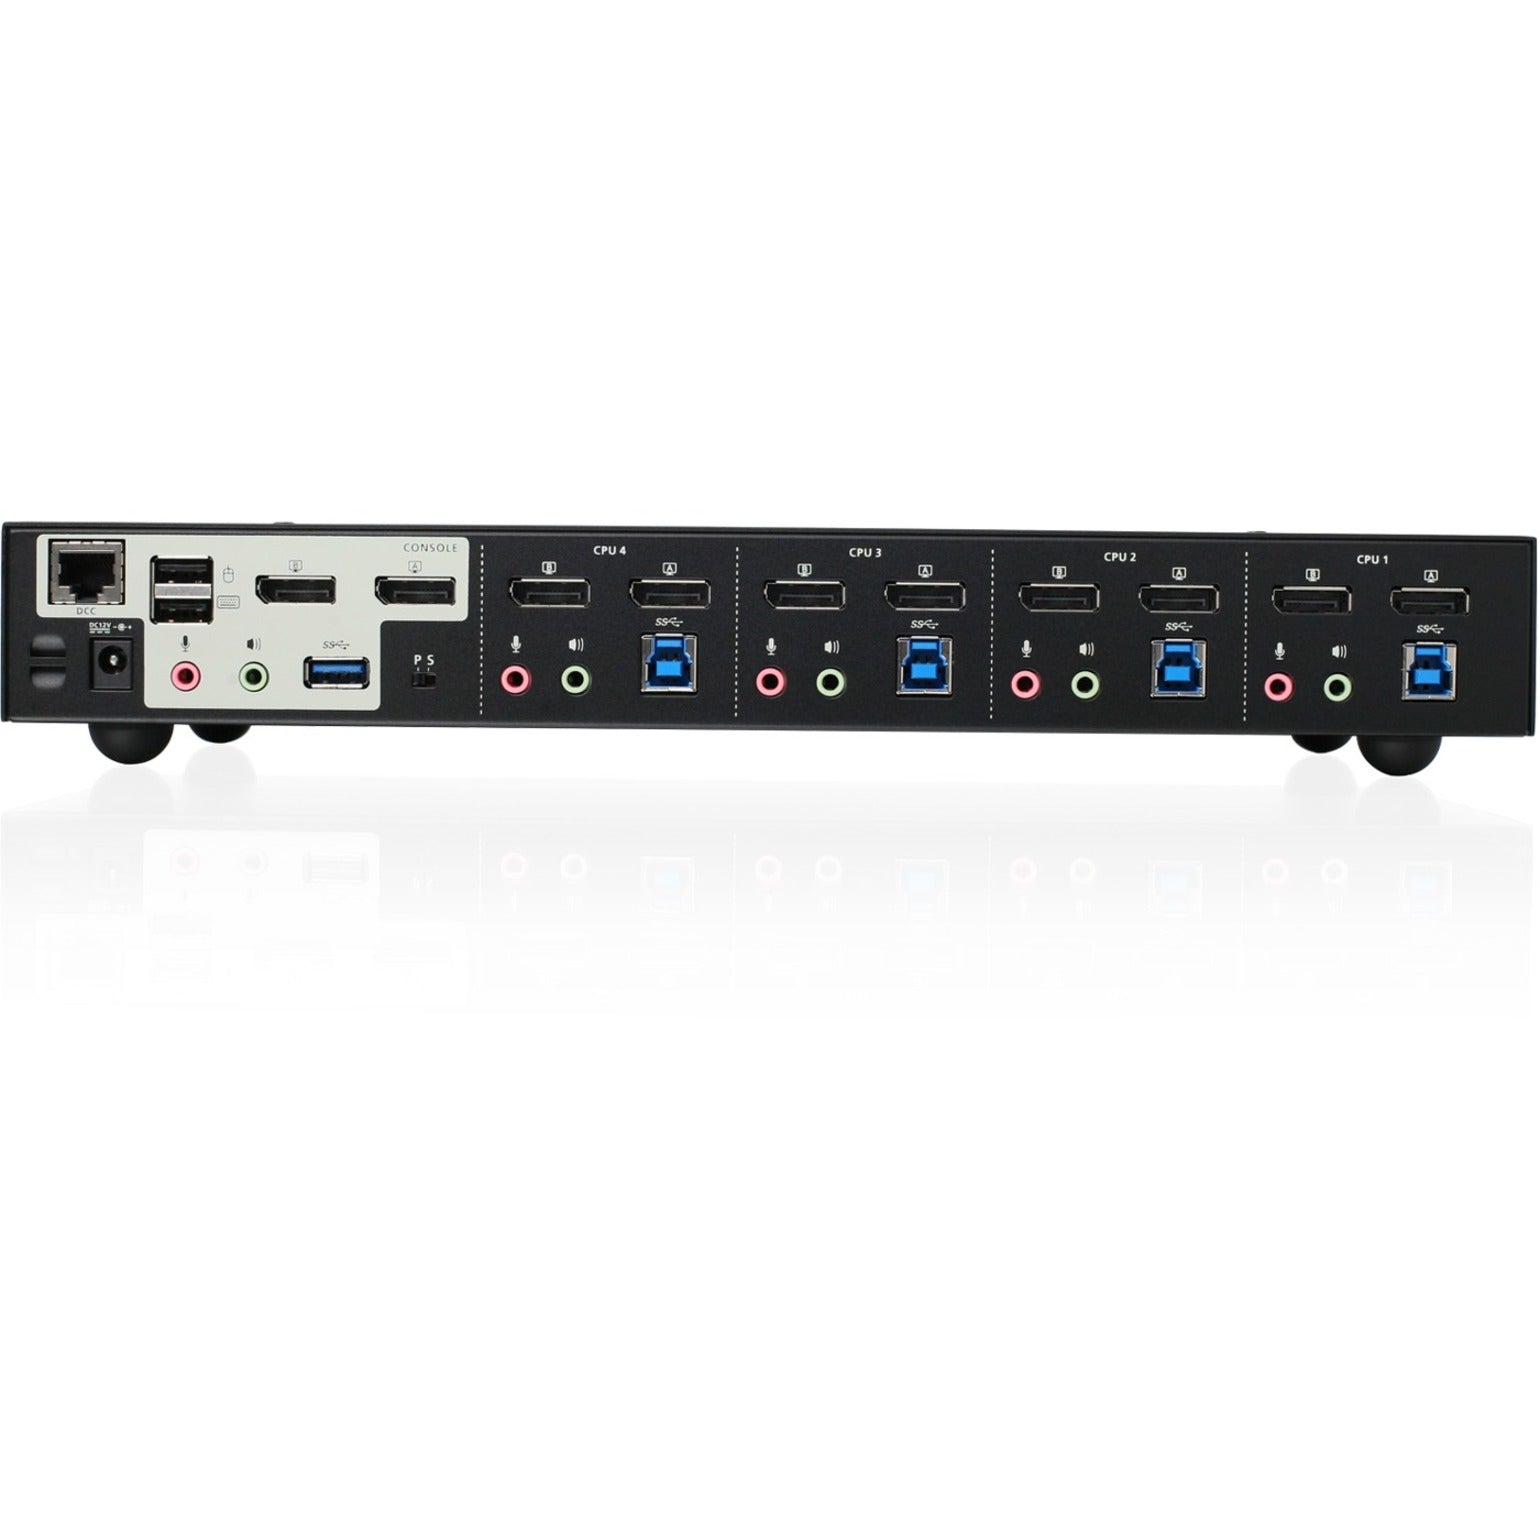 IOGEAR GCS1944 4-Port 4K Dual View DisplayPort KVMP with USB 3.0 Hub and Audio (TAA), Maximum Video Resolution 4096 x 2160, 3 Year Limited Warranty